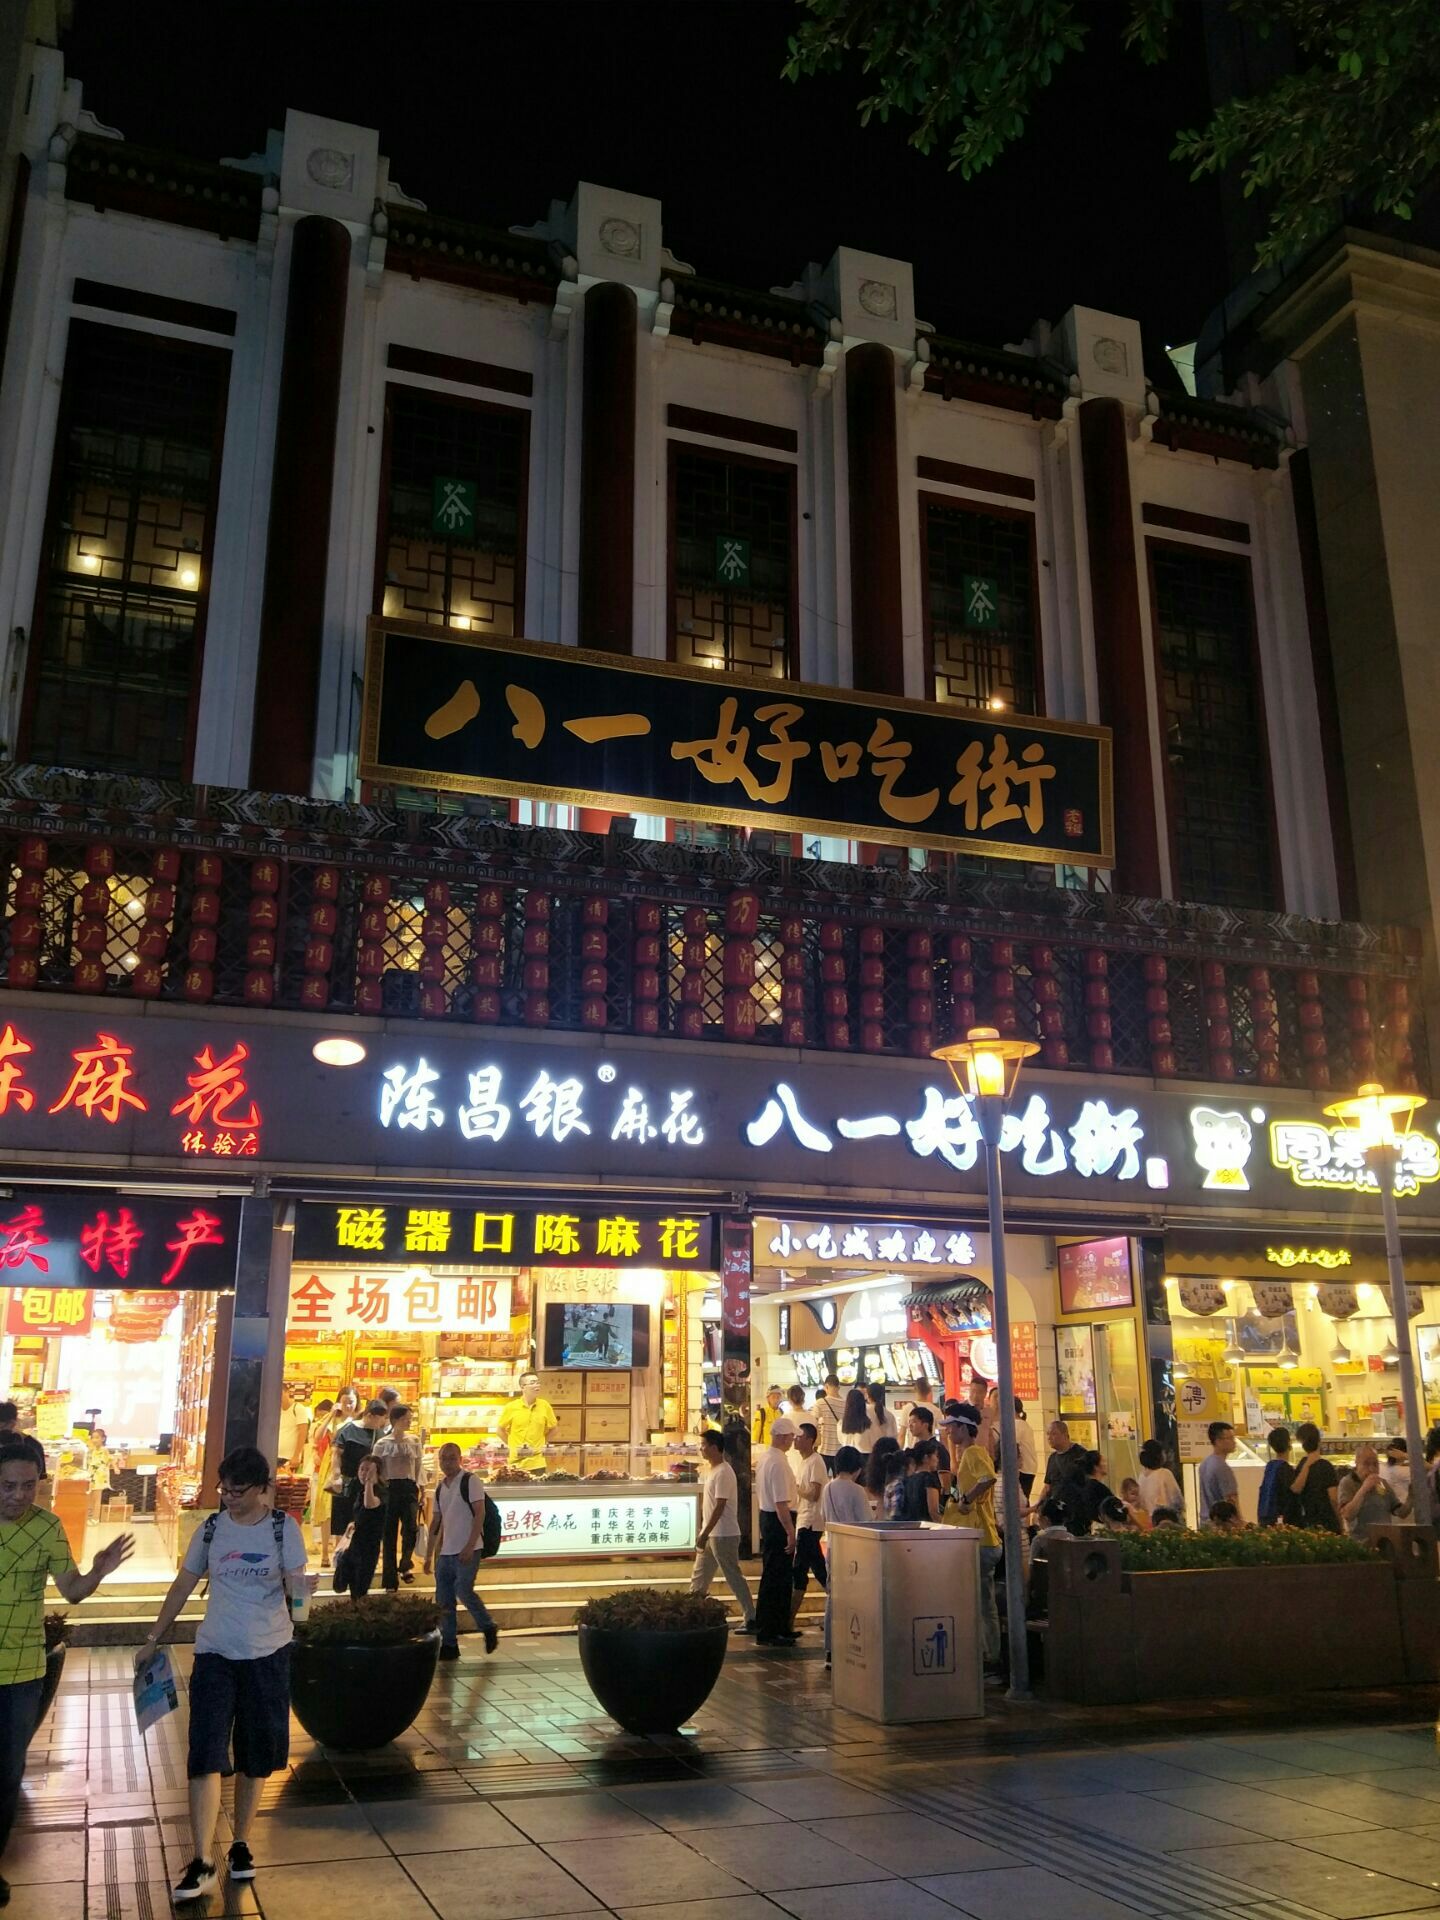 每座旅游城市都有一条美食街，这几条美食街游客比景区还多 [11P]|美食指南 - 武当休闲山庄 - 稳定,和谐,人性化的中文社区